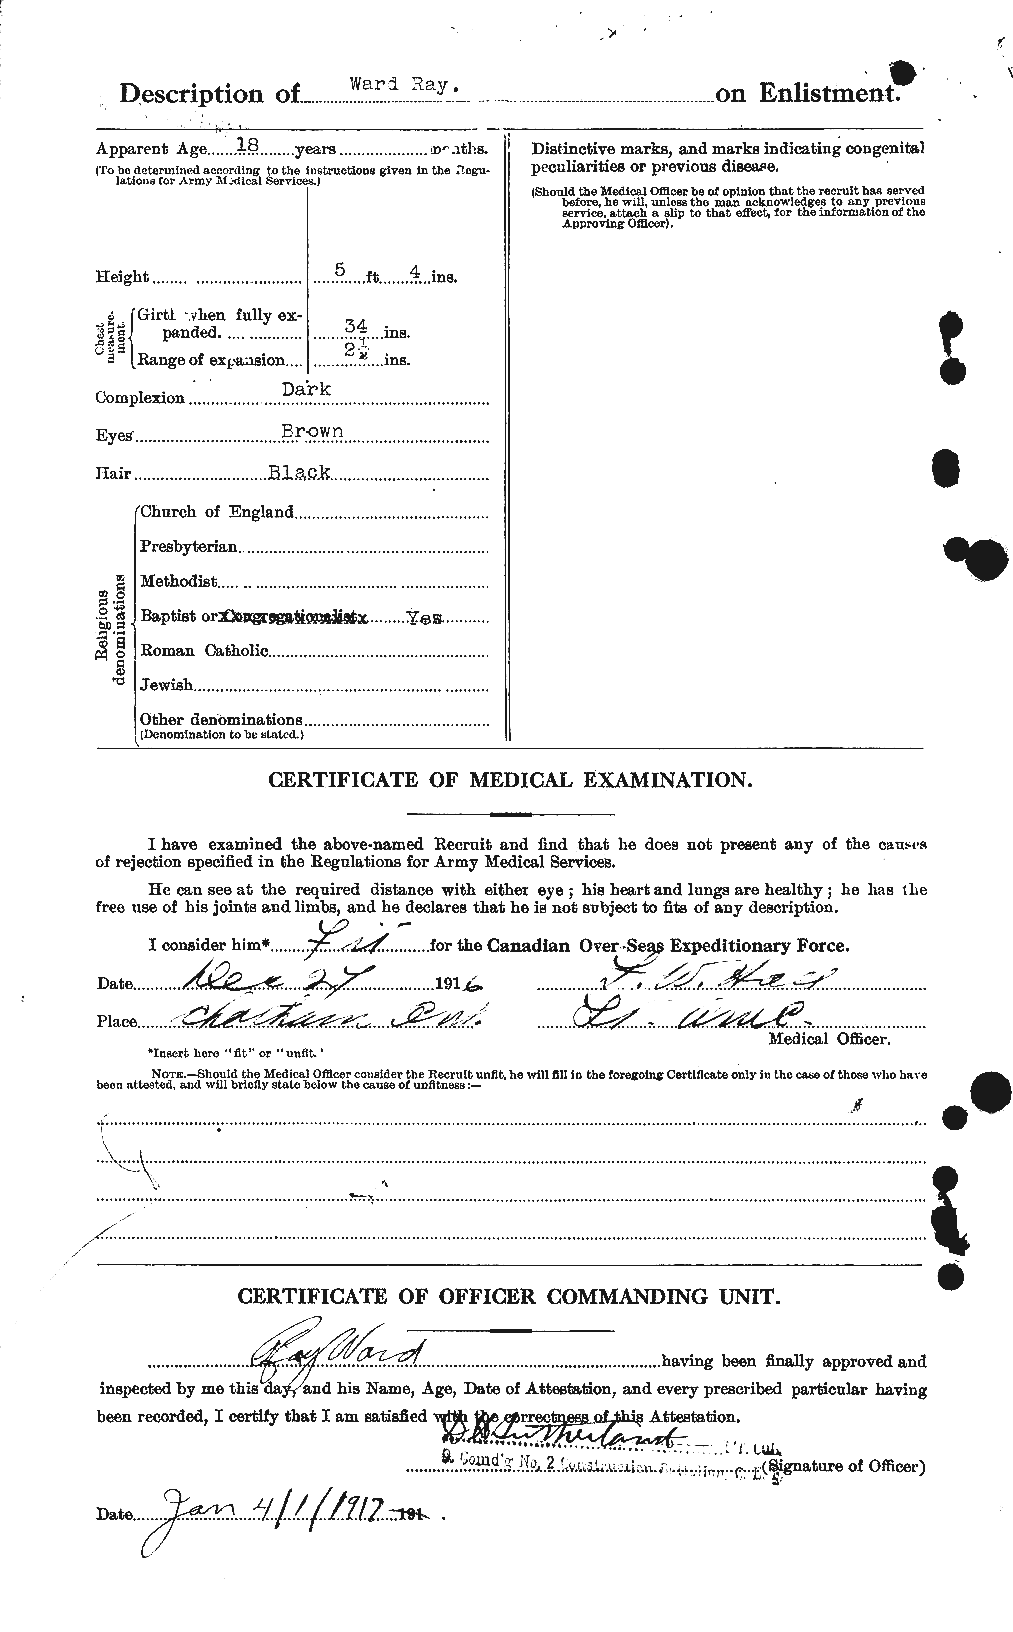 Dossiers du Personnel de la Première Guerre mondiale - CEC 659637b